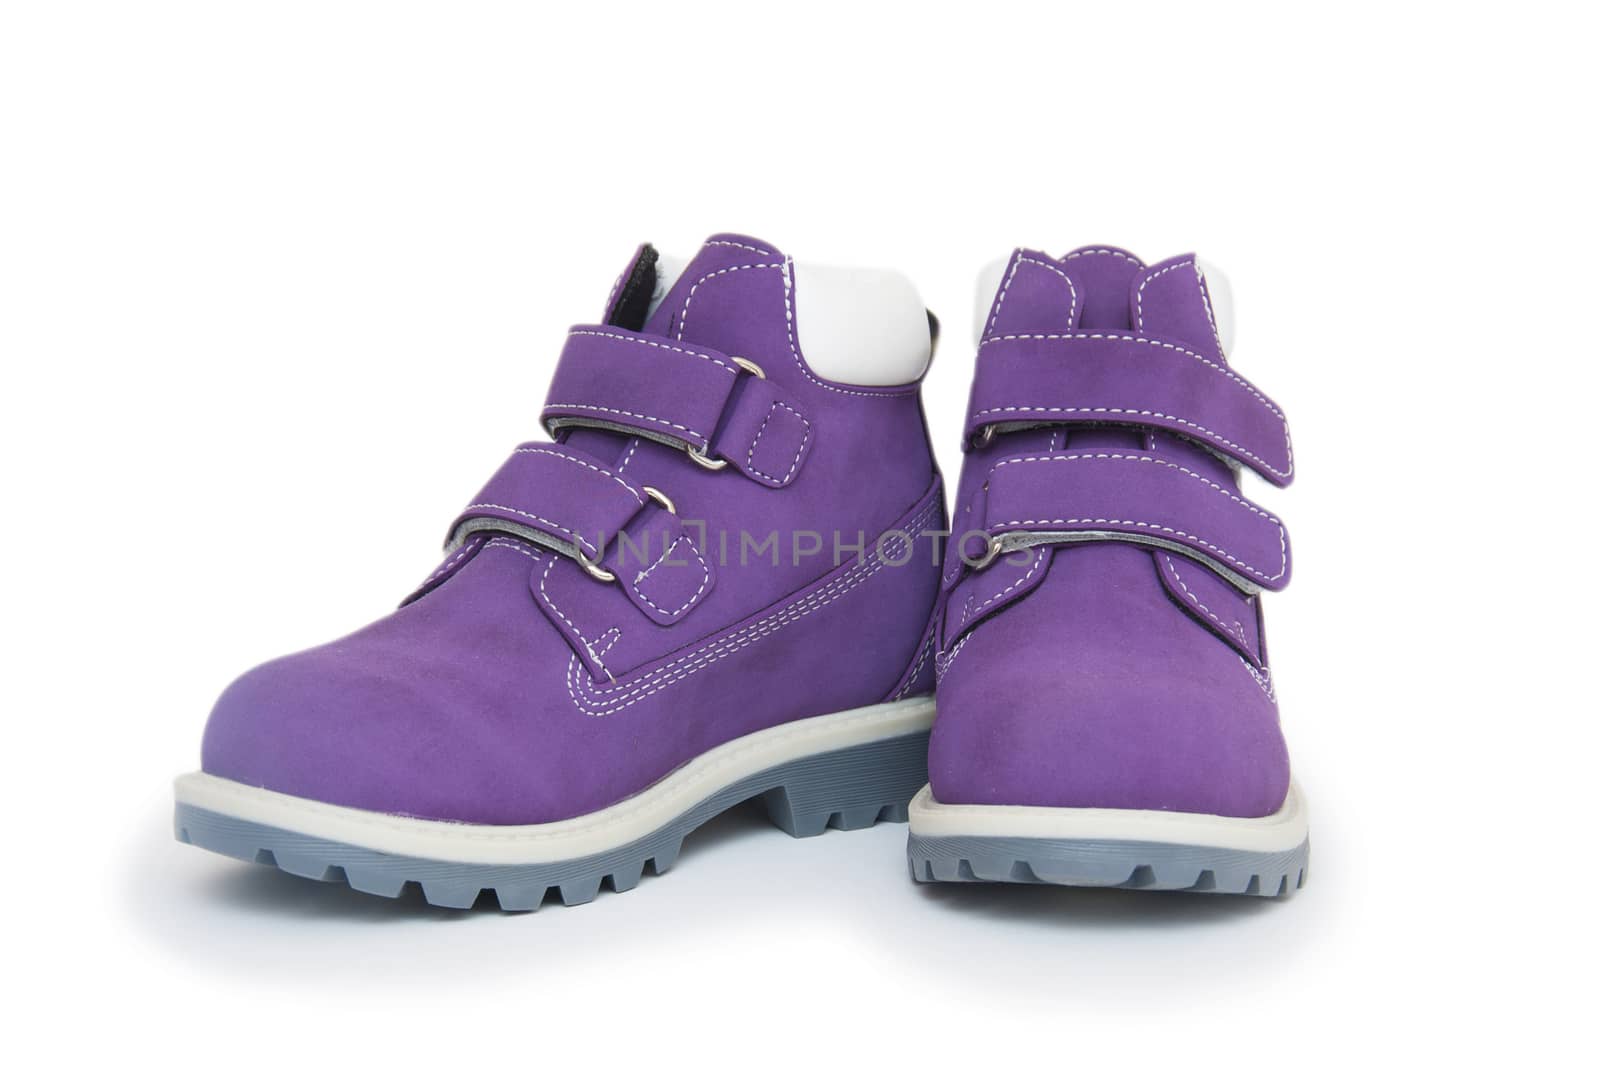 Purple children`s boots 